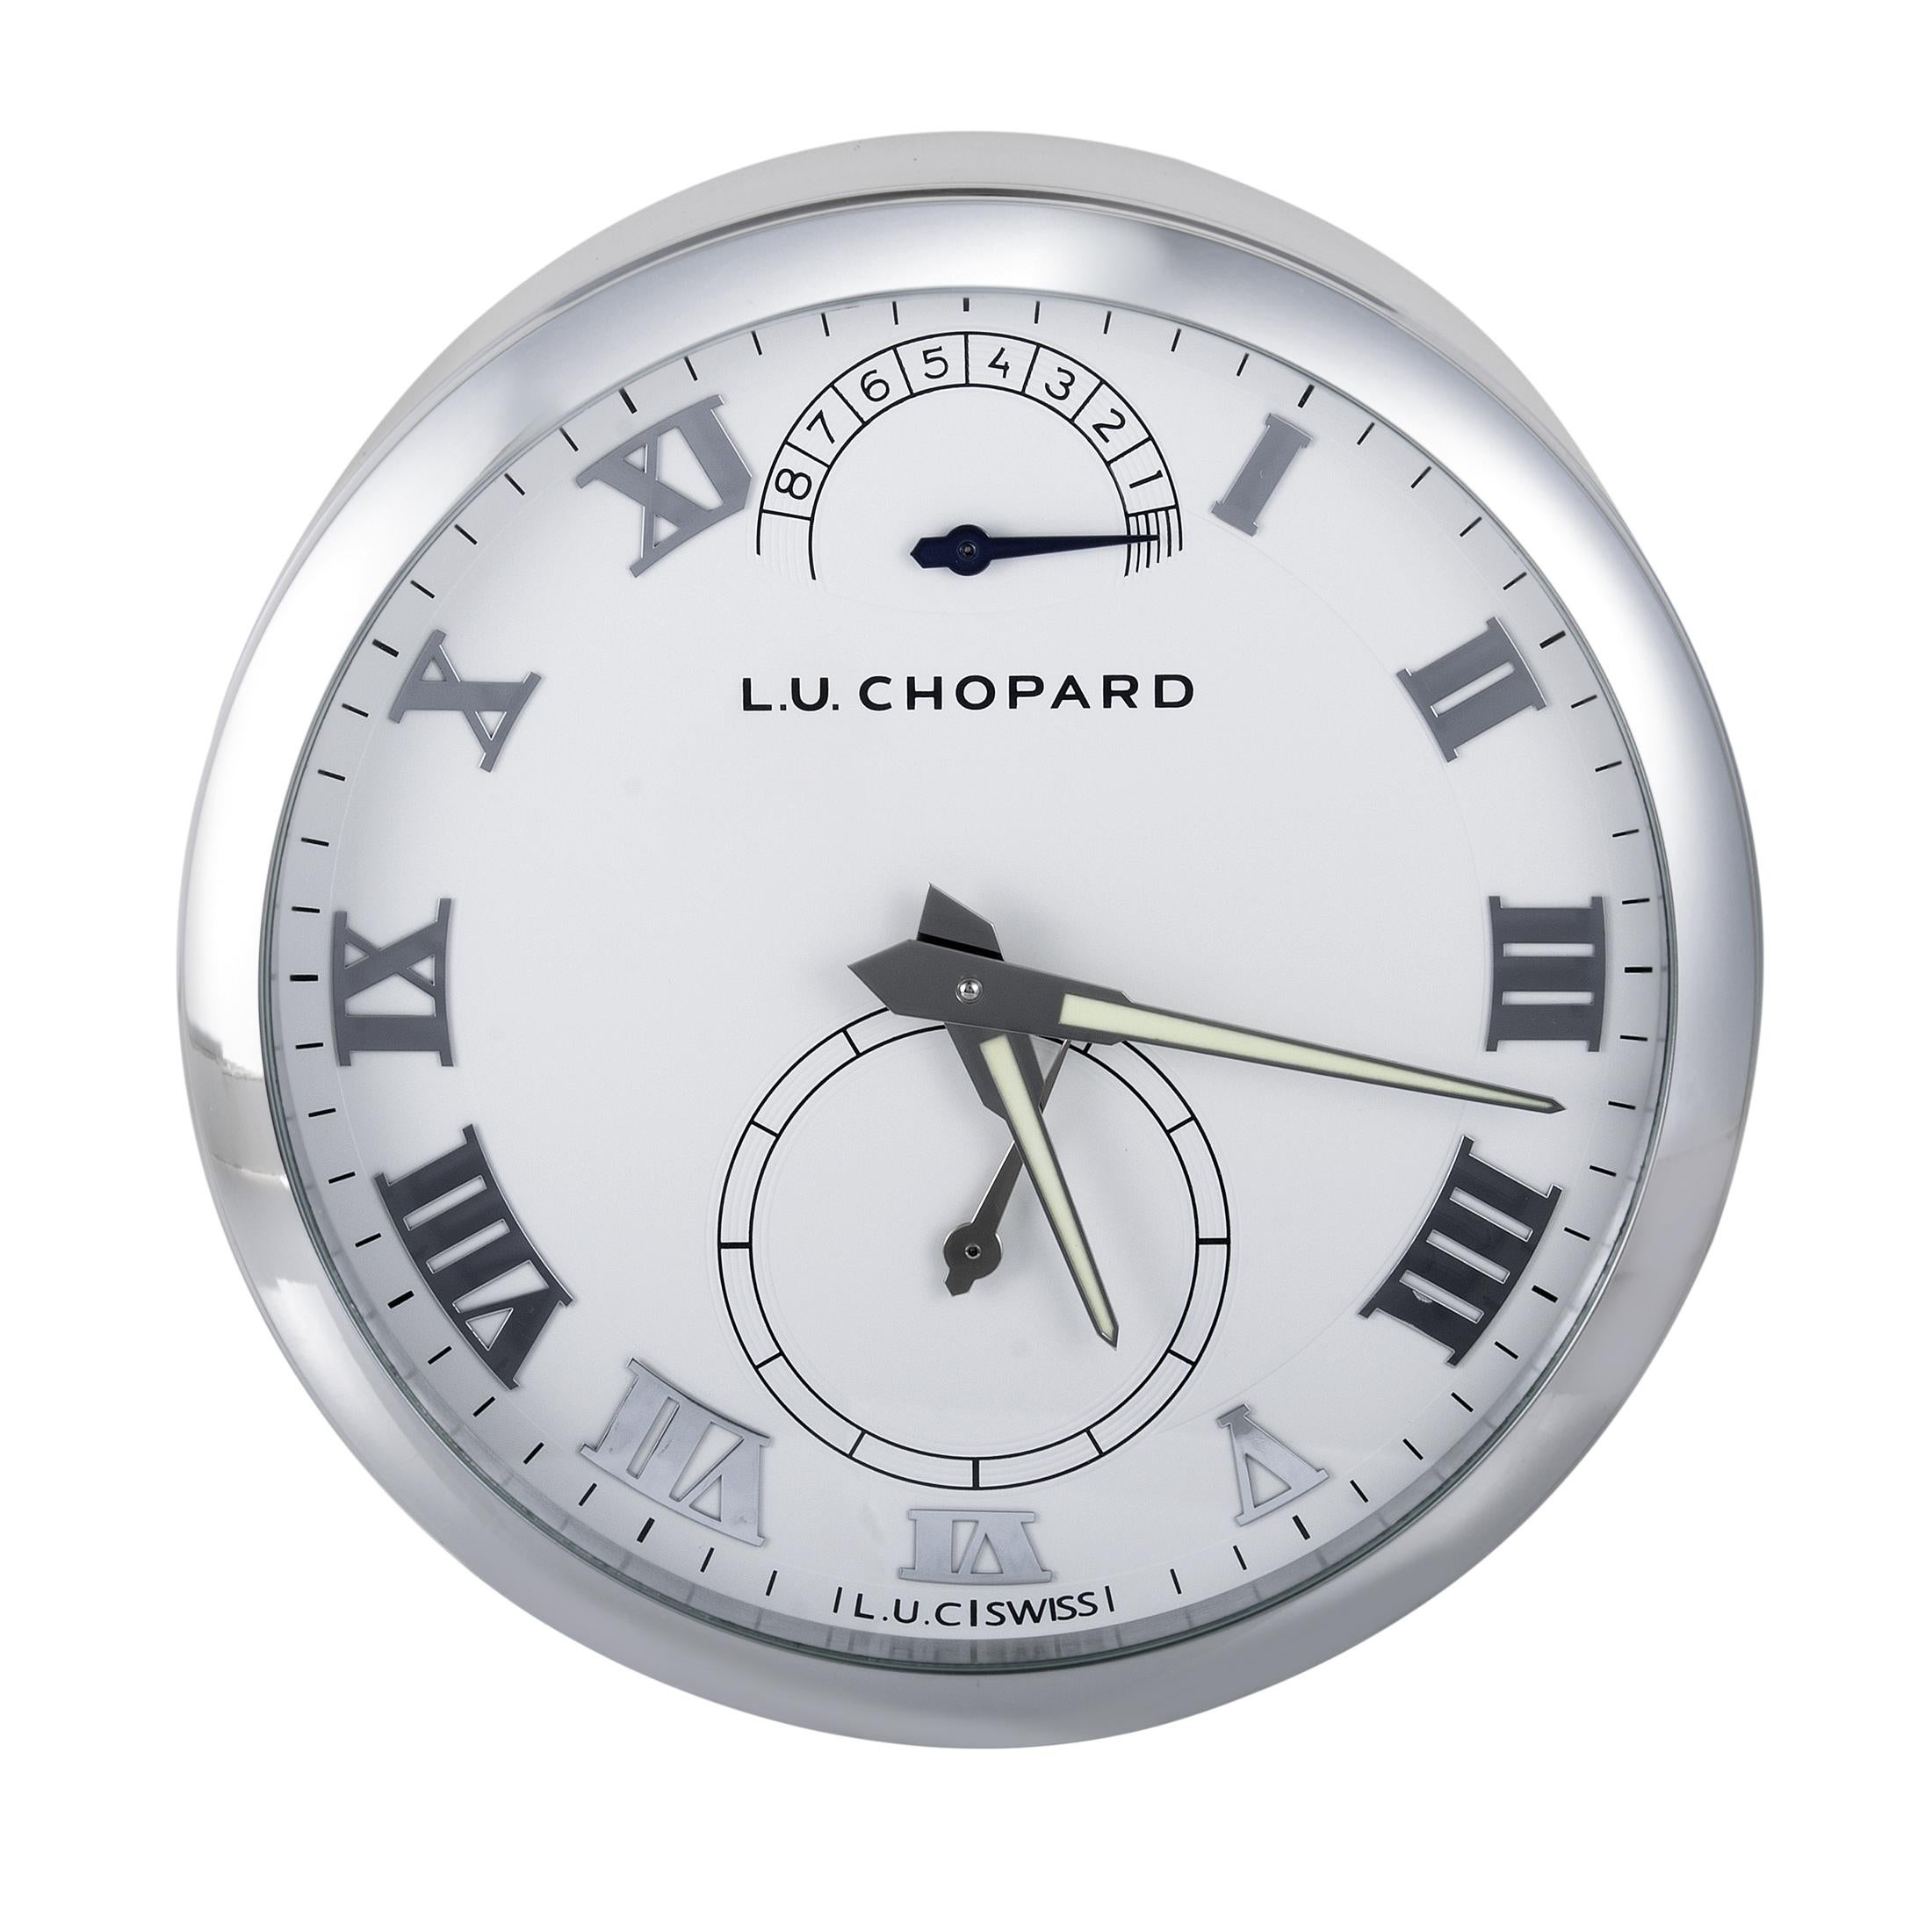 Ein unwiderstehlicher Blick für jeden Uhrenliebhaber bietet der transparente Gehäuseboden dieses erstaunlichen Stücks von Chopard, das von der Collection'S L.U.C. inspiriert ist und als erste Tischuhr der Marke mit mechanischem Handaufzugswerk